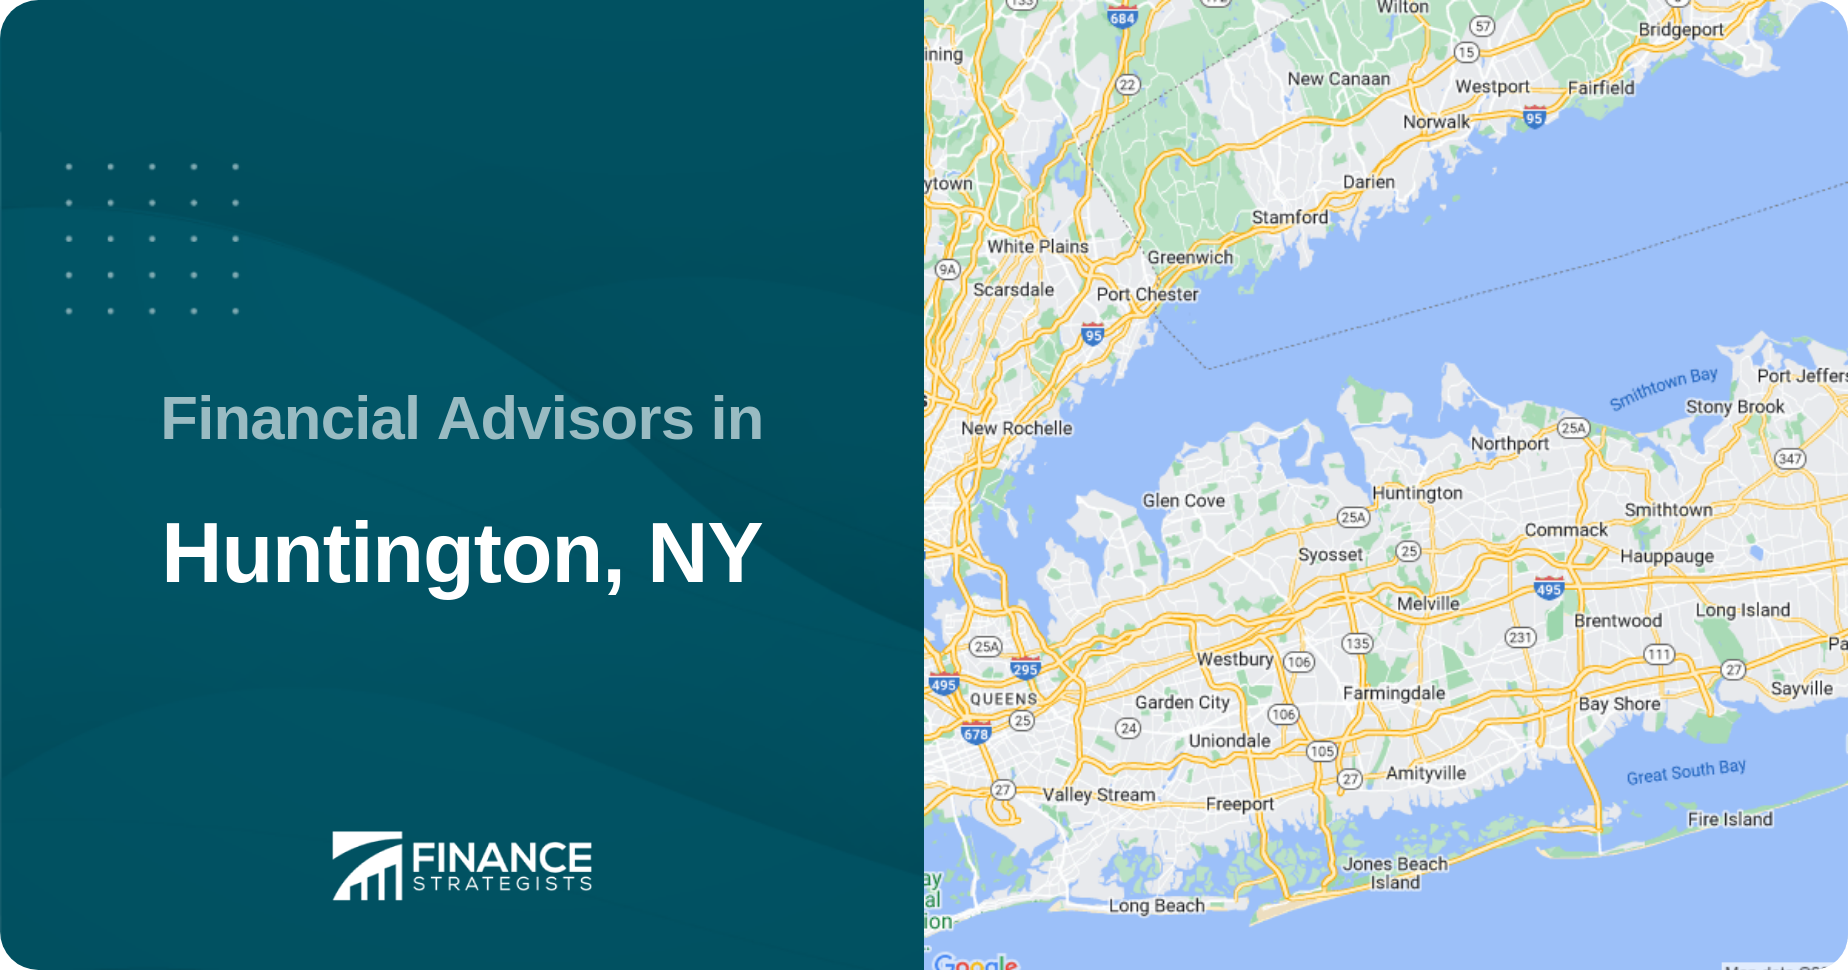 Financial Advisors in Huntington, NY